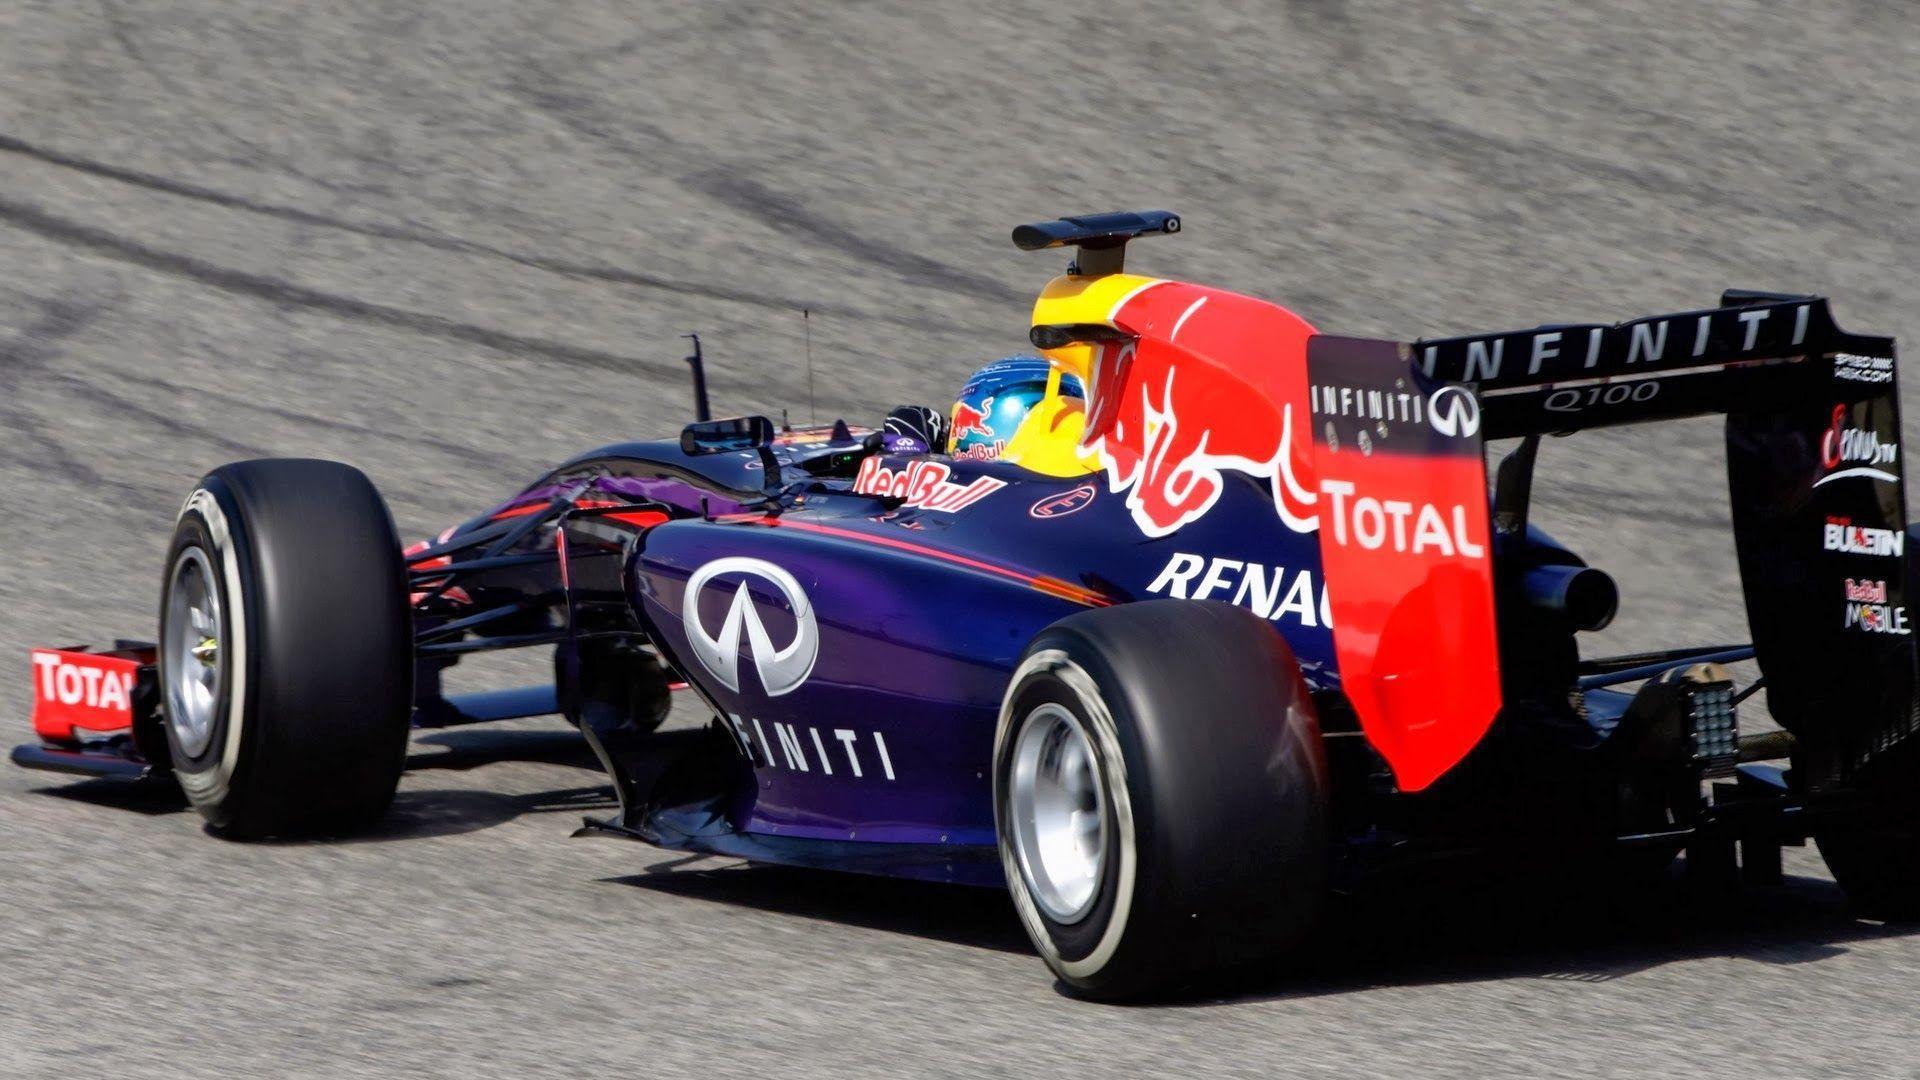 Sebastian Vettel 2014 Red Bull Renault RB10 Wallpaper Wide or HD